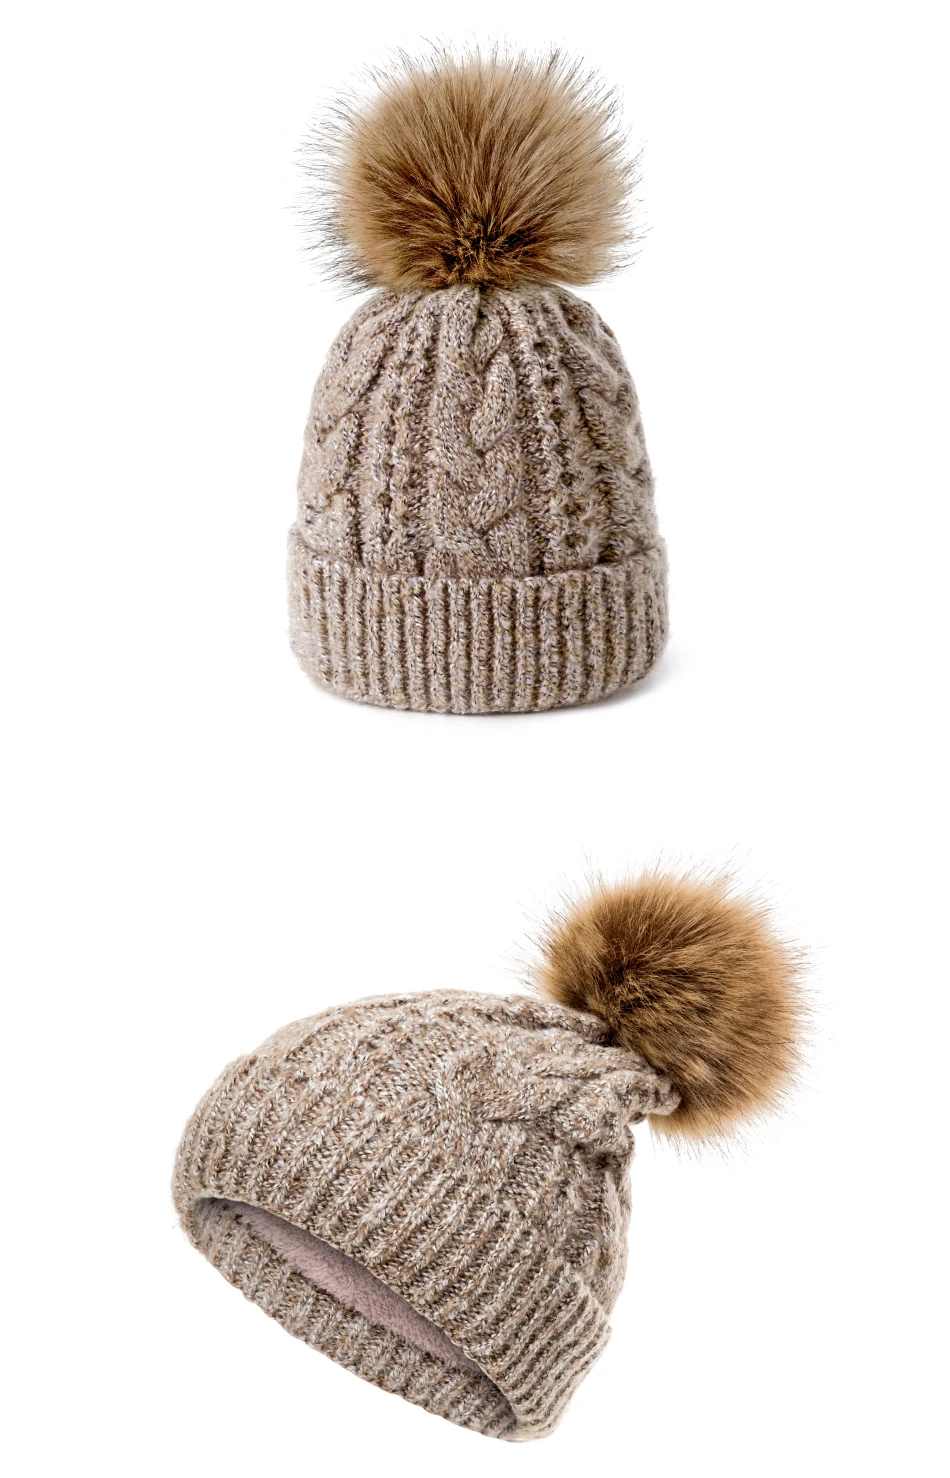 MOLIXINYU/Новая зимняя утепленная детская шапка с помпонами, мягкая зимняя вязаная шапка для мальчиков и девочек, зимняя детская шапка для детей возрастом от 5 лет